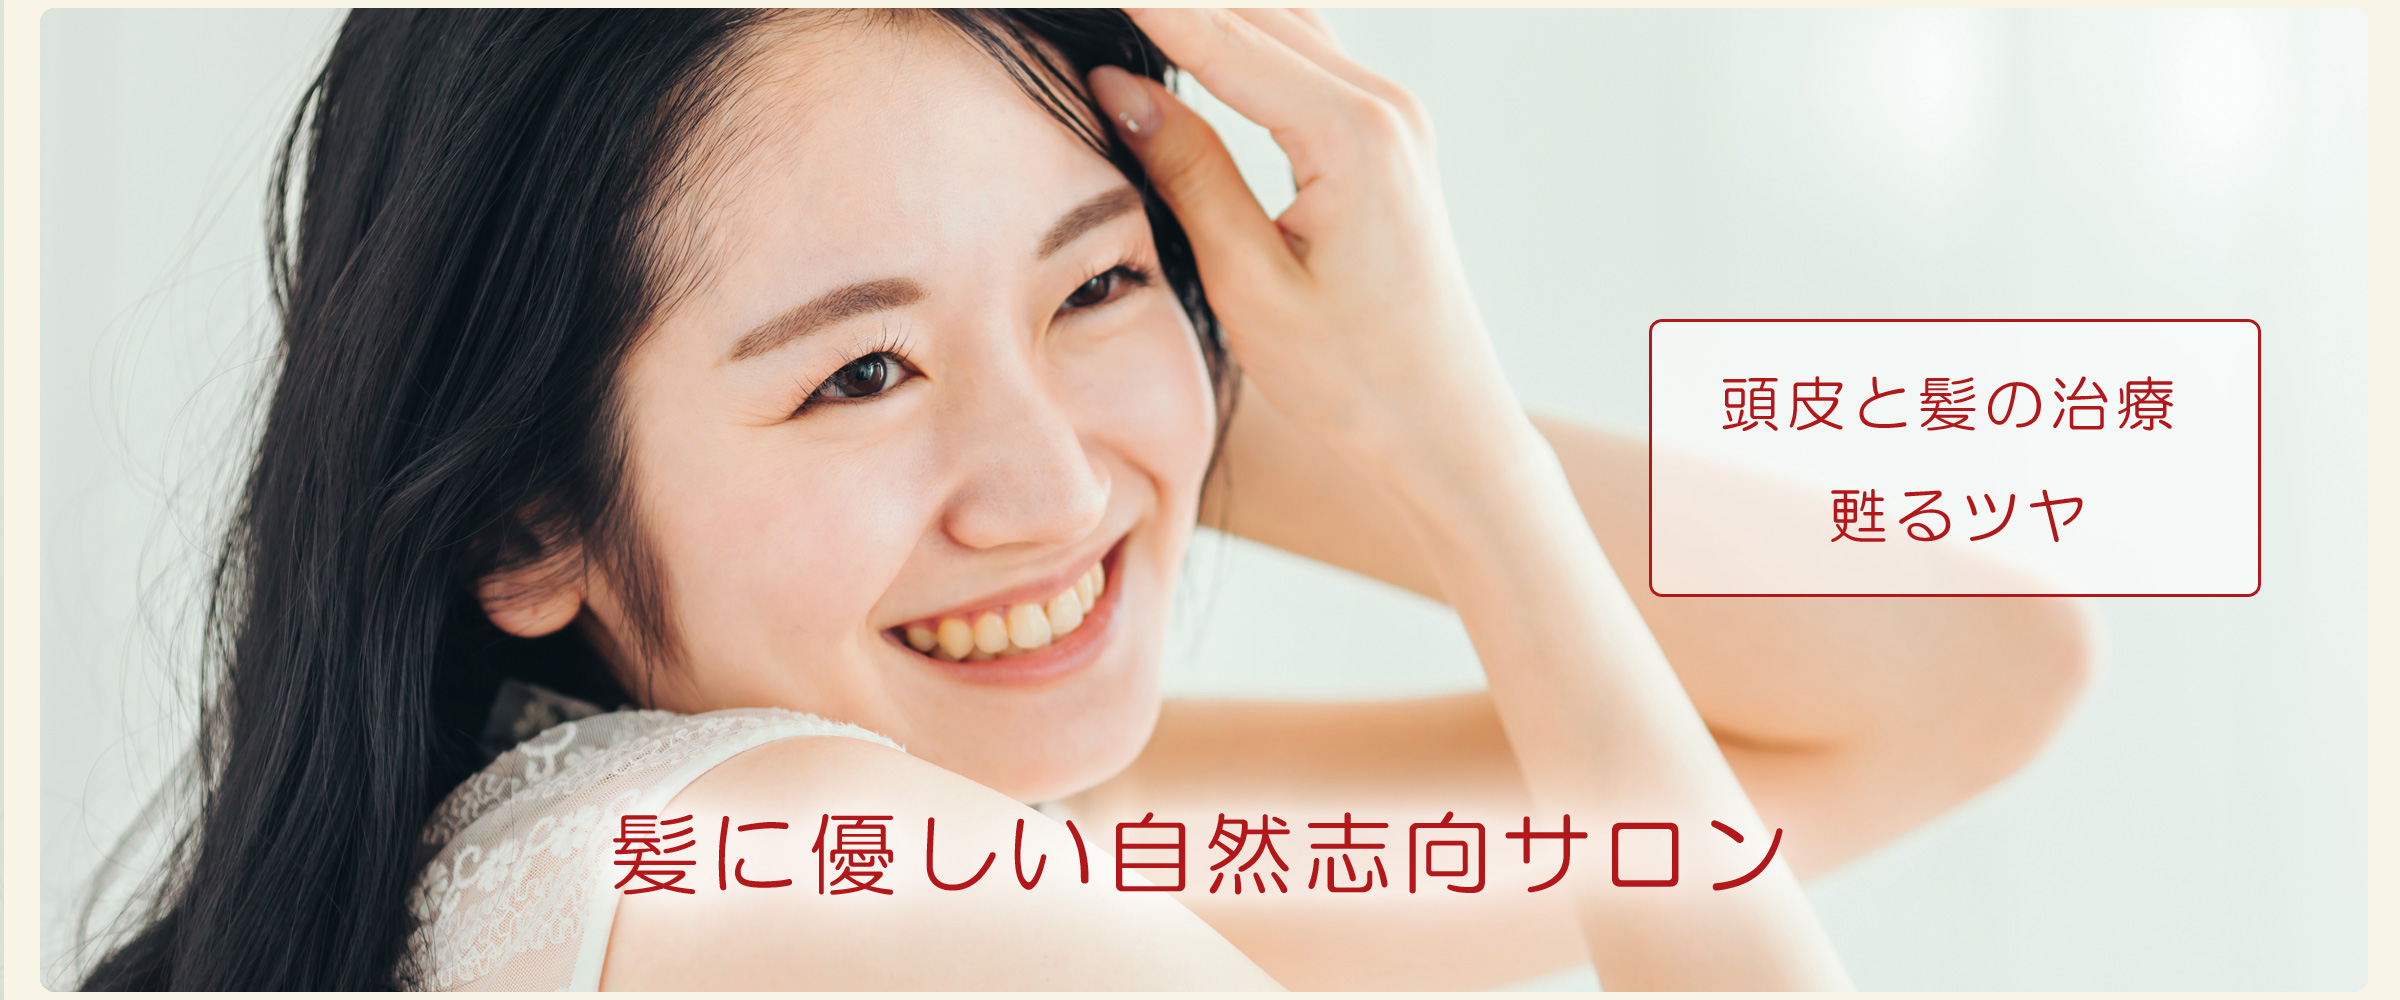 長崎 時津のトータルビューティ美容室 ハットリ 公式 オフシャルサイト